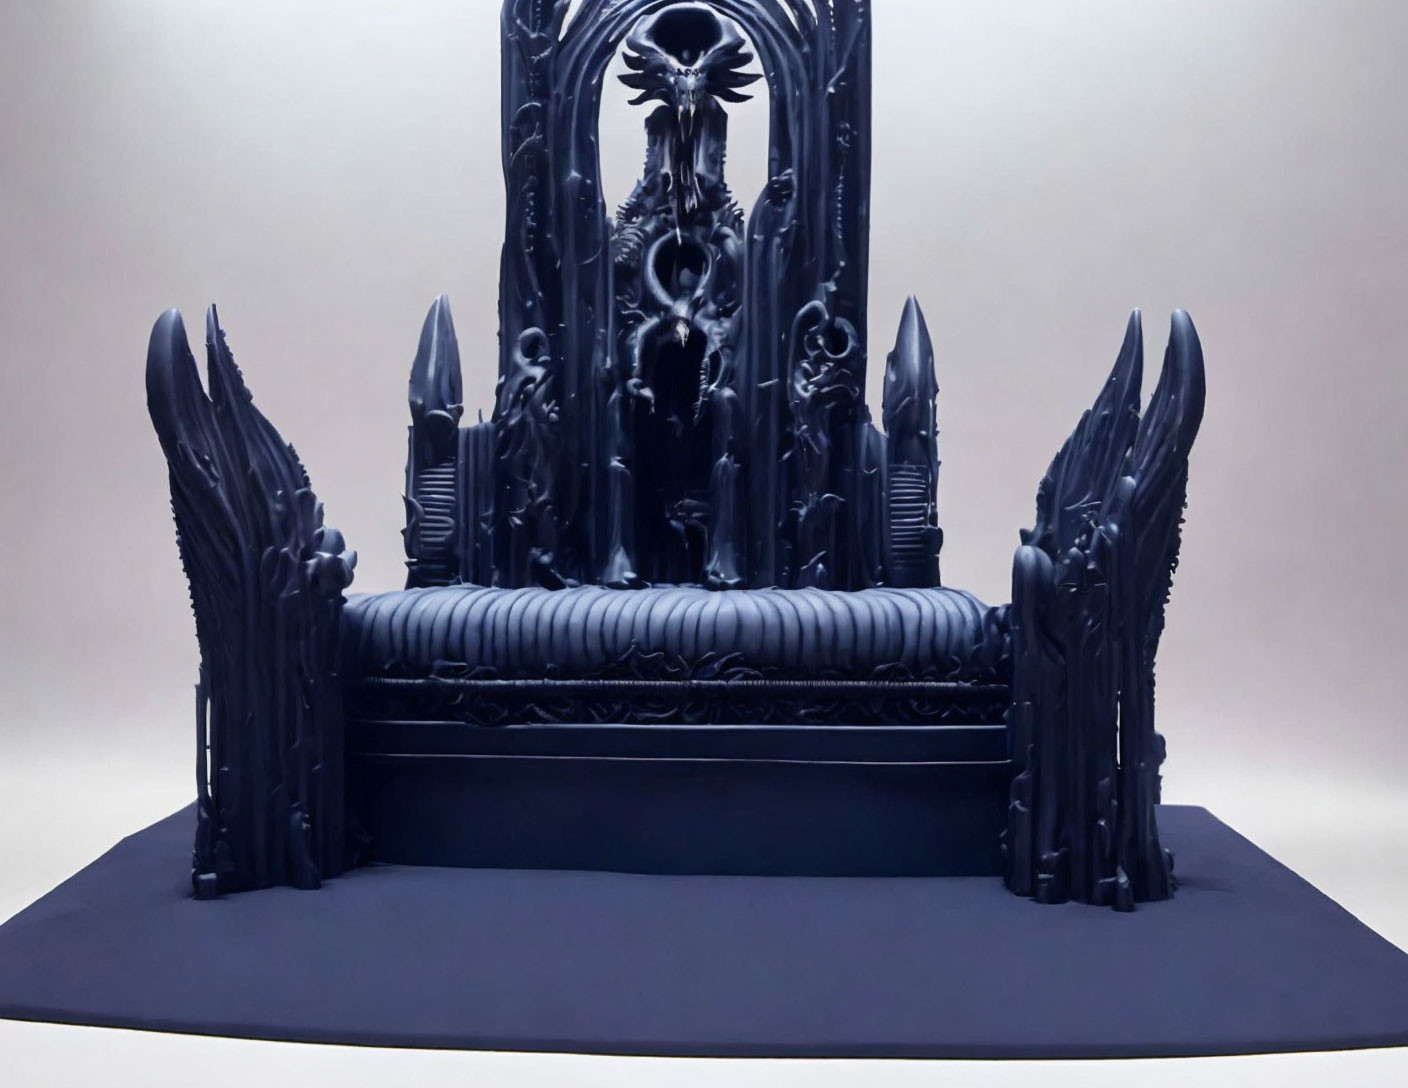  A tall dark throne